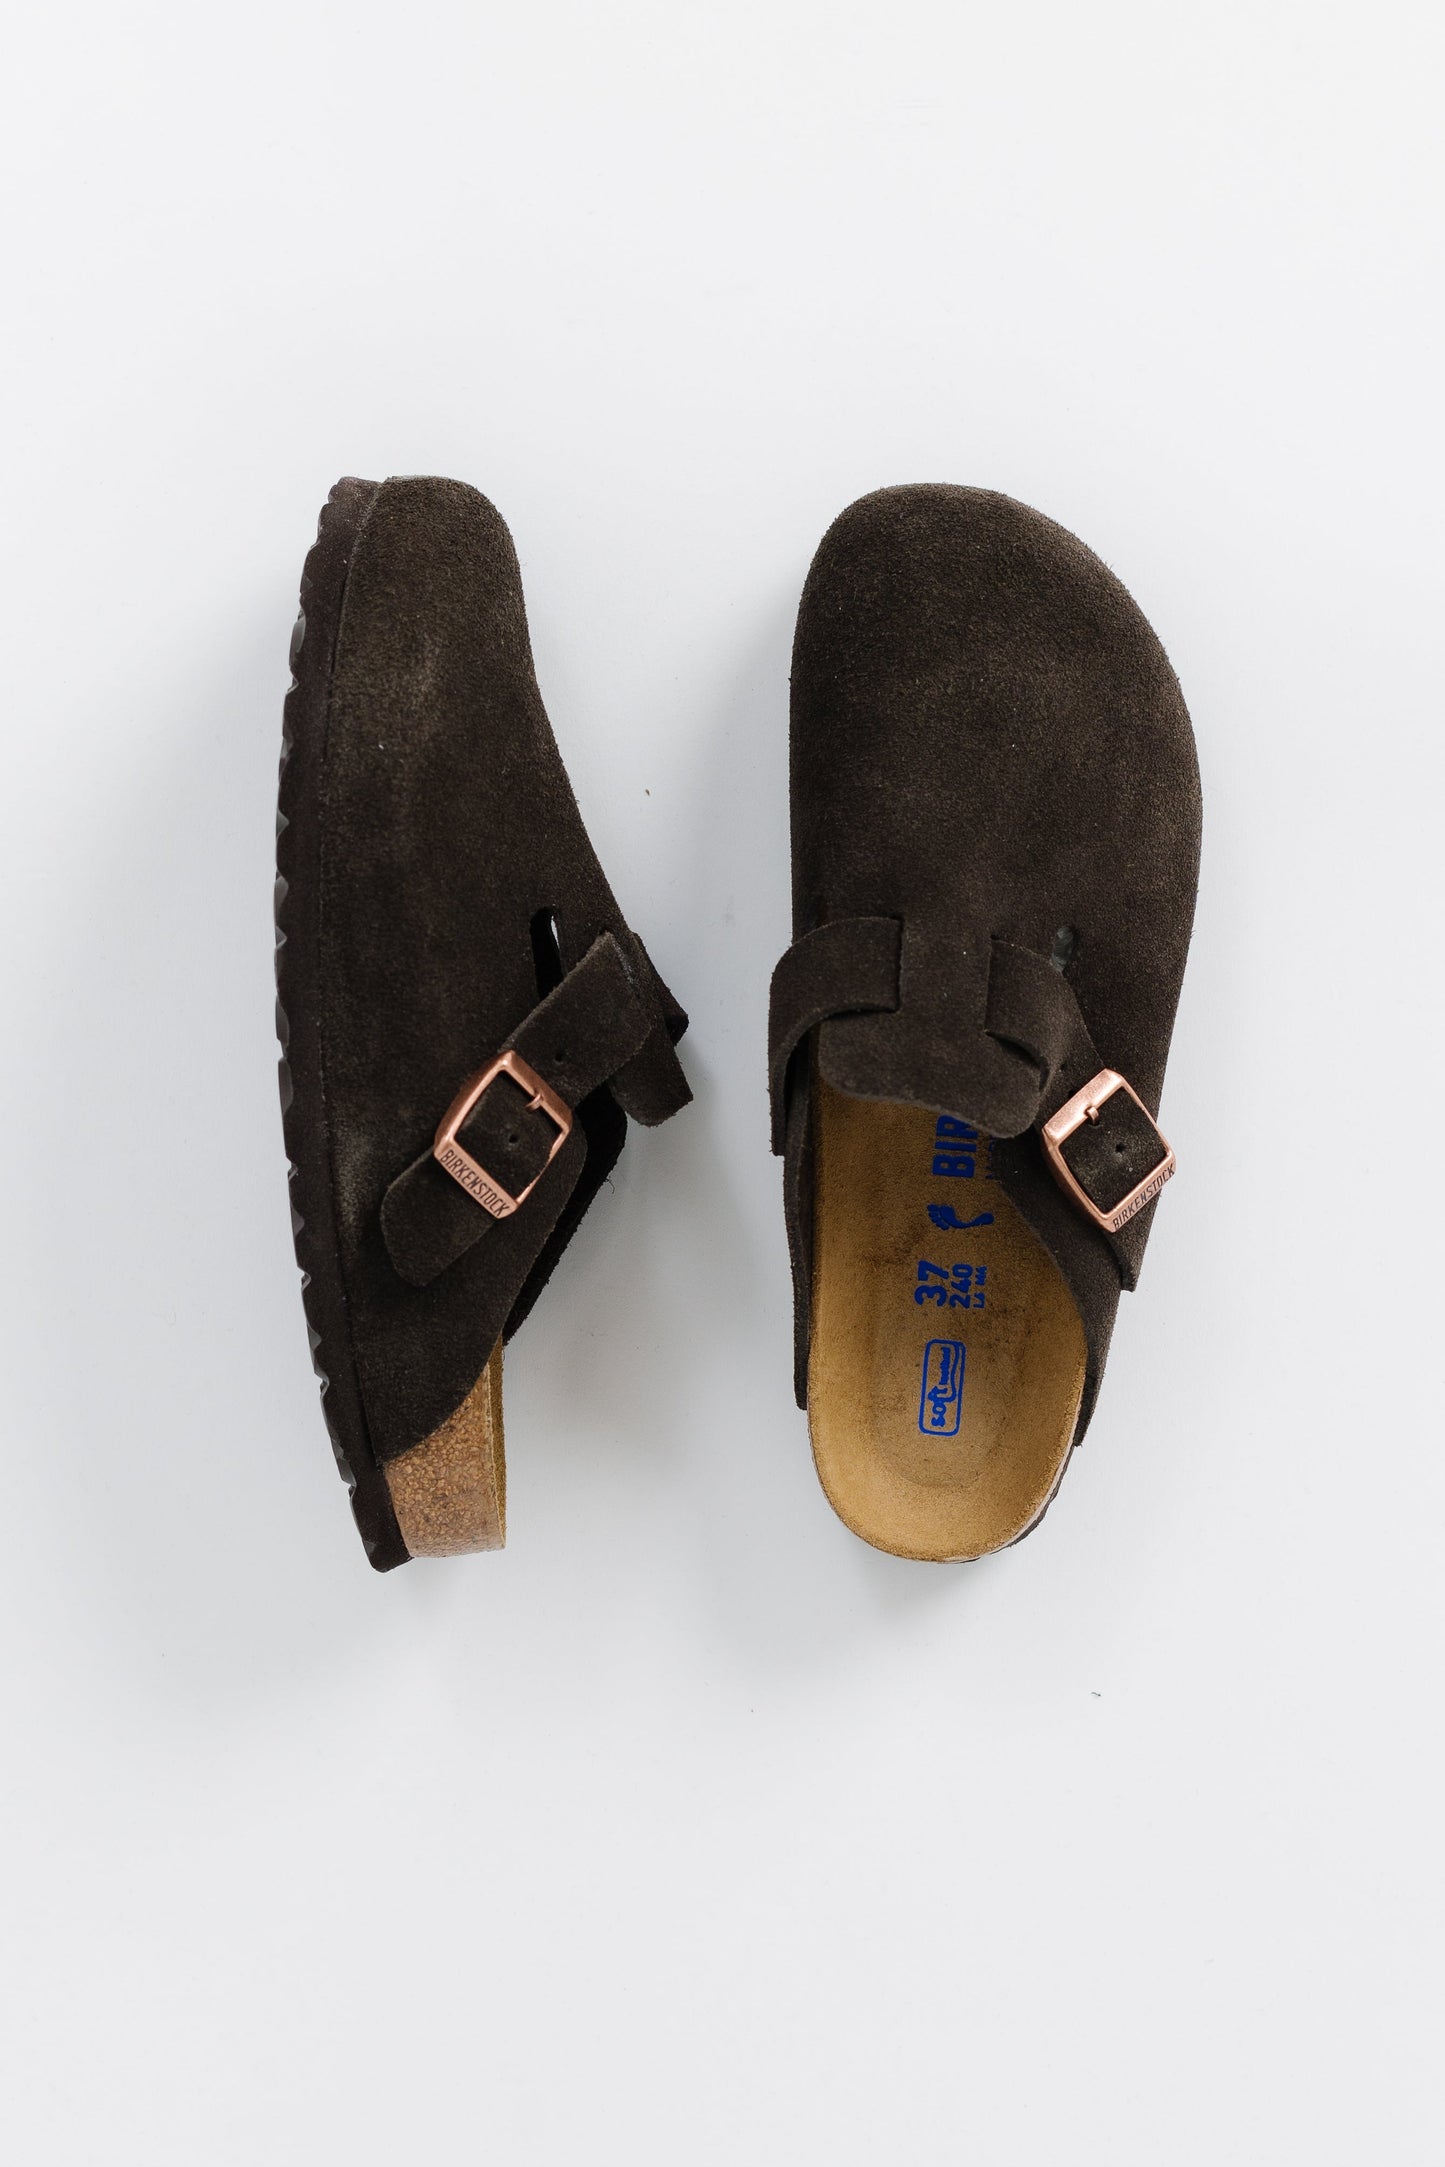 Birkenstock Boston Soft Footbed Suede Leather WOMEN'S SHOES Birkenstock 